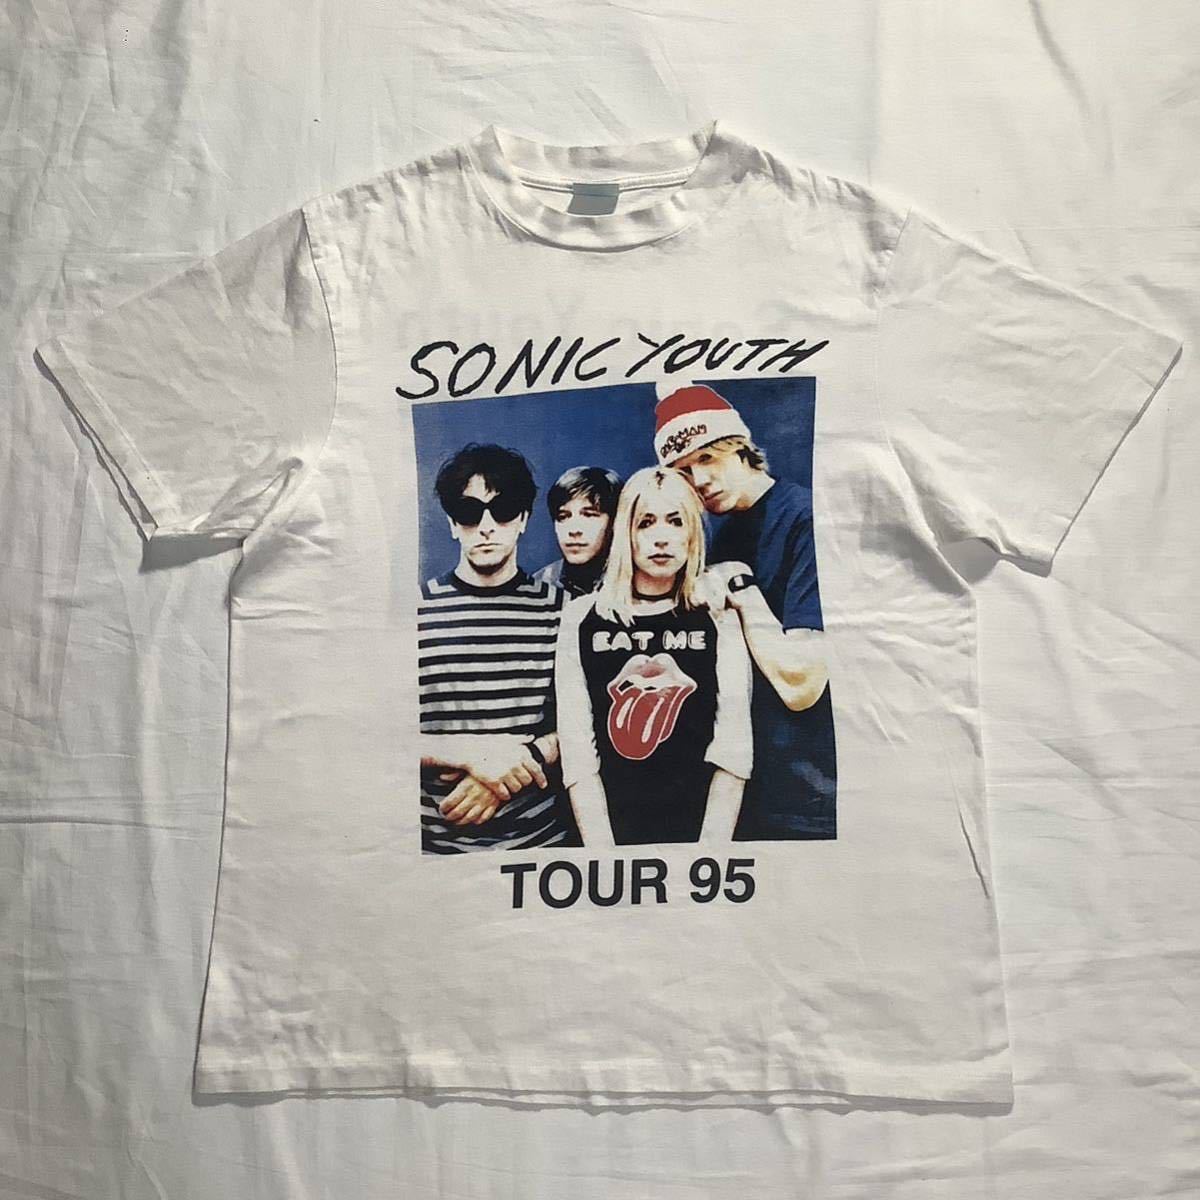 激レア! 1995 Sonic Youth Tour パーキングロット 両面プリント メンバーフォト ヴィンテージ Tシャツ 80s 90s _画像1